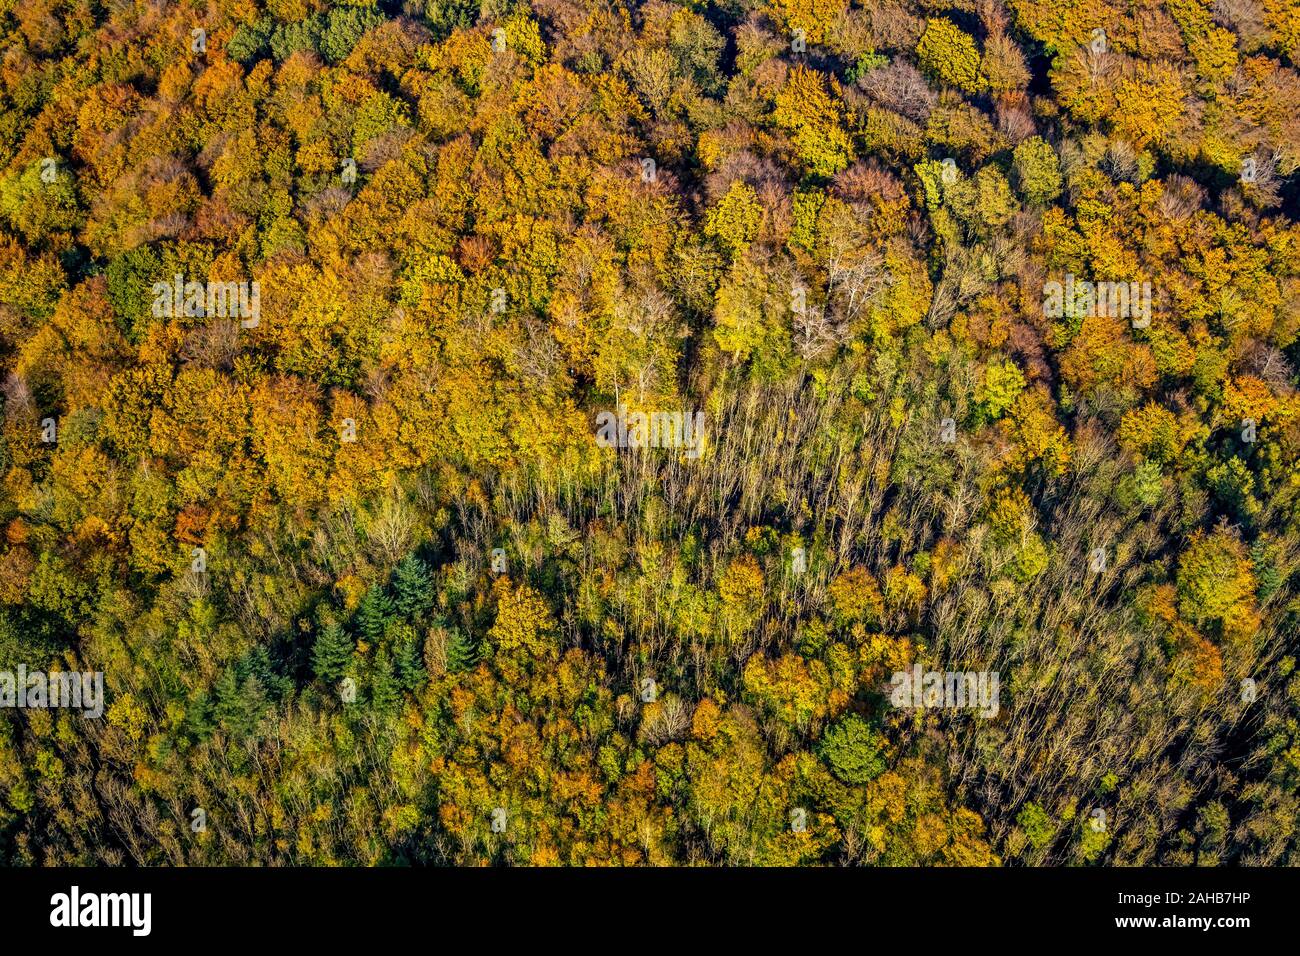 Luftbild, Herbstwald dans bunten Farben, Nähe Steinbruch Habbel, Arnsberg, Sauerland, Nordrhein-Westfalen, Deutschland, DE, Europa, Herbstfarben, Herbst Banque D'Images